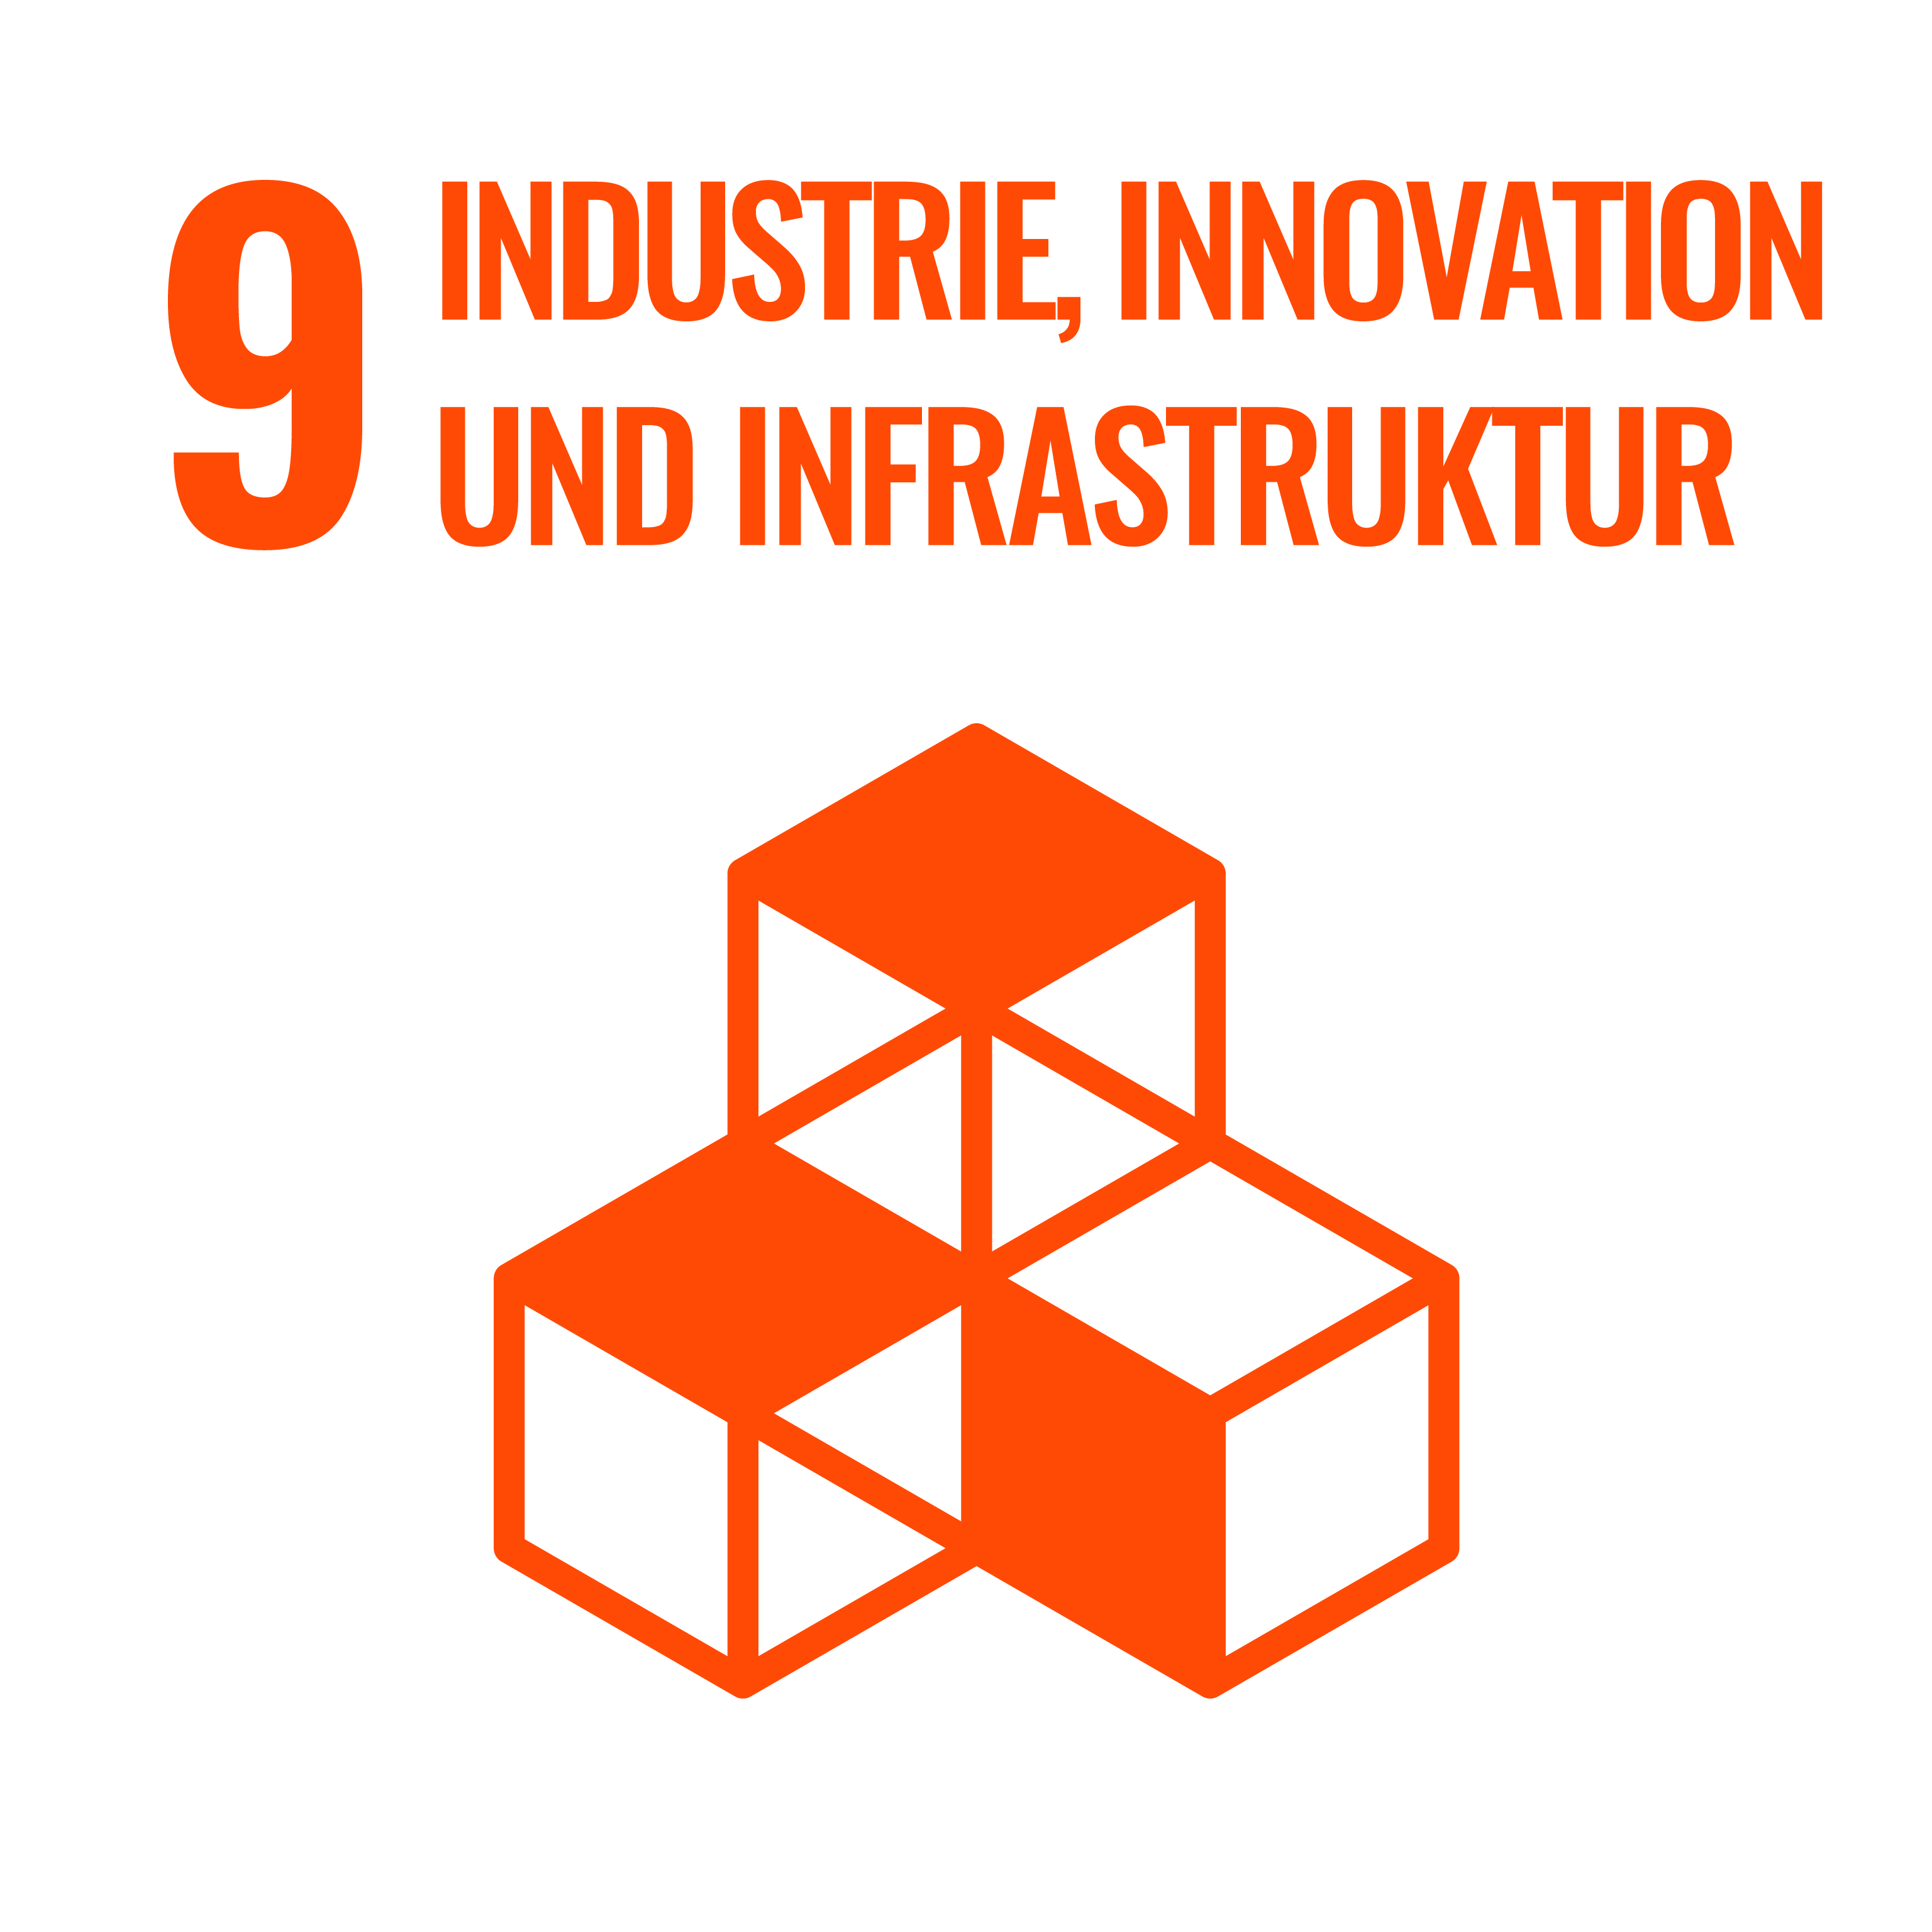 9 Industrie, Innovation und Infrastruktur